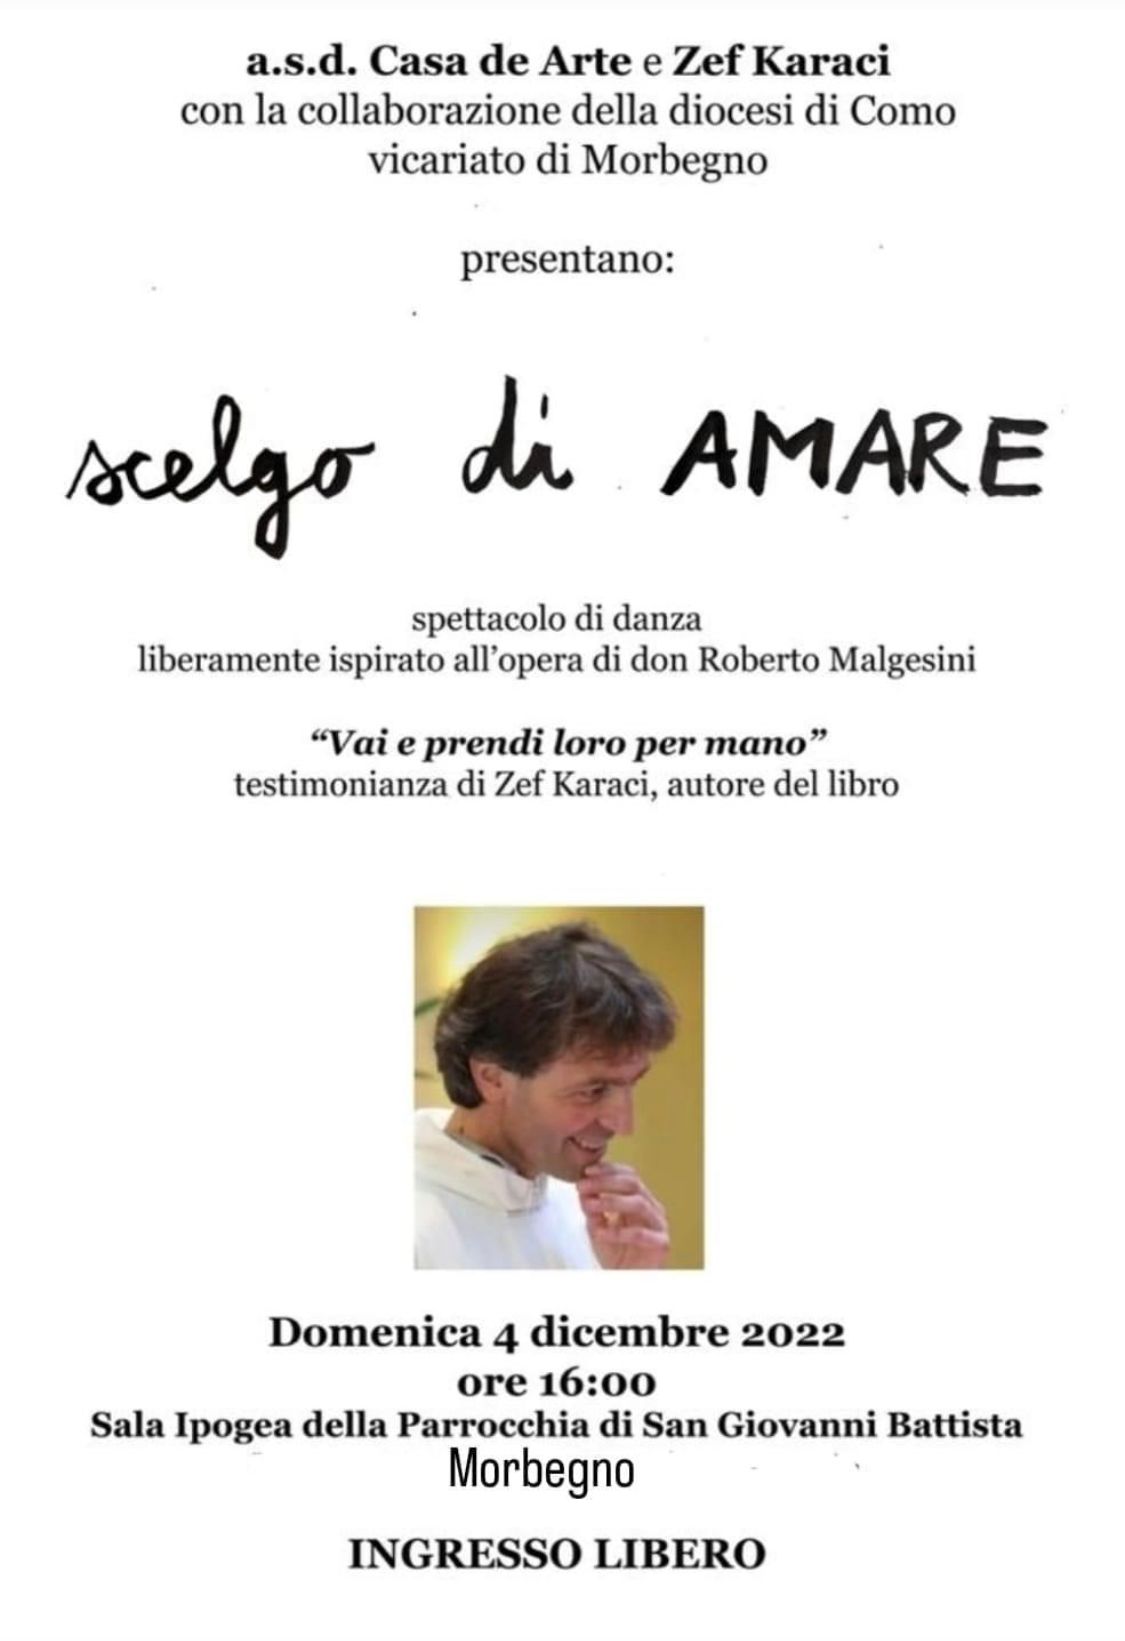 Scelgo di Amare - don Roberto Malgesini